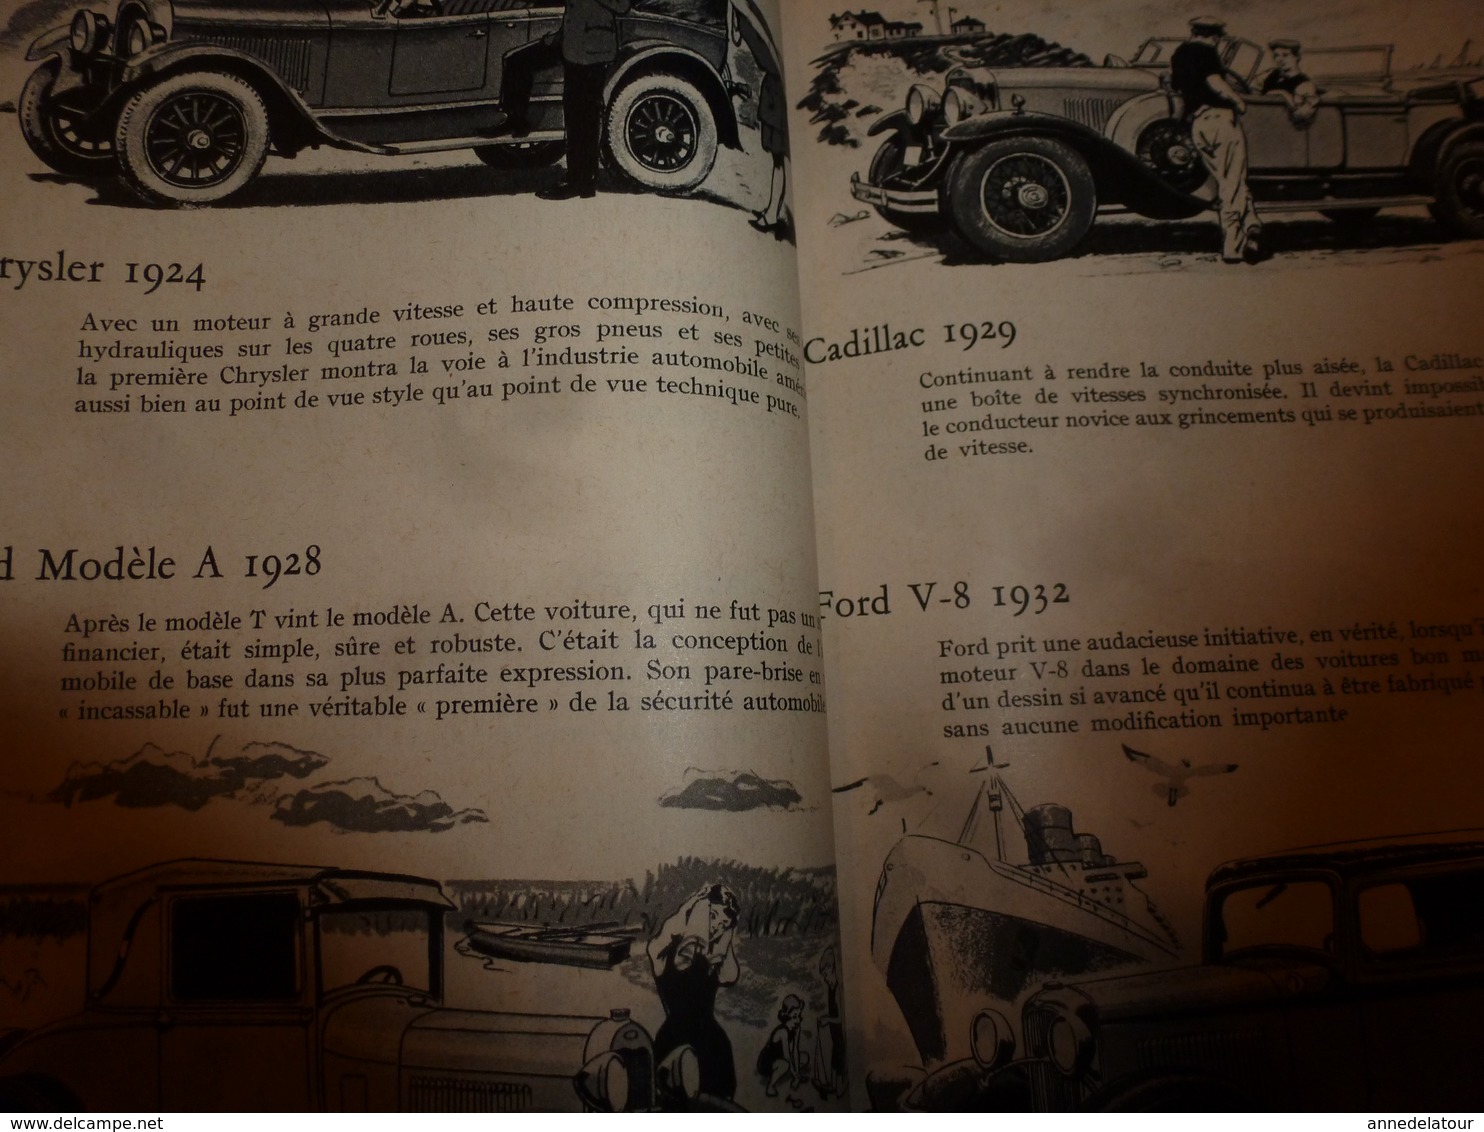 1958 MÉCANIQUE POPULAIRE: Les automobiles de 1800 à 1900 ( Ford,Thunderbird,Cadillac,Oldsmobile,Essex,Packard,etc)